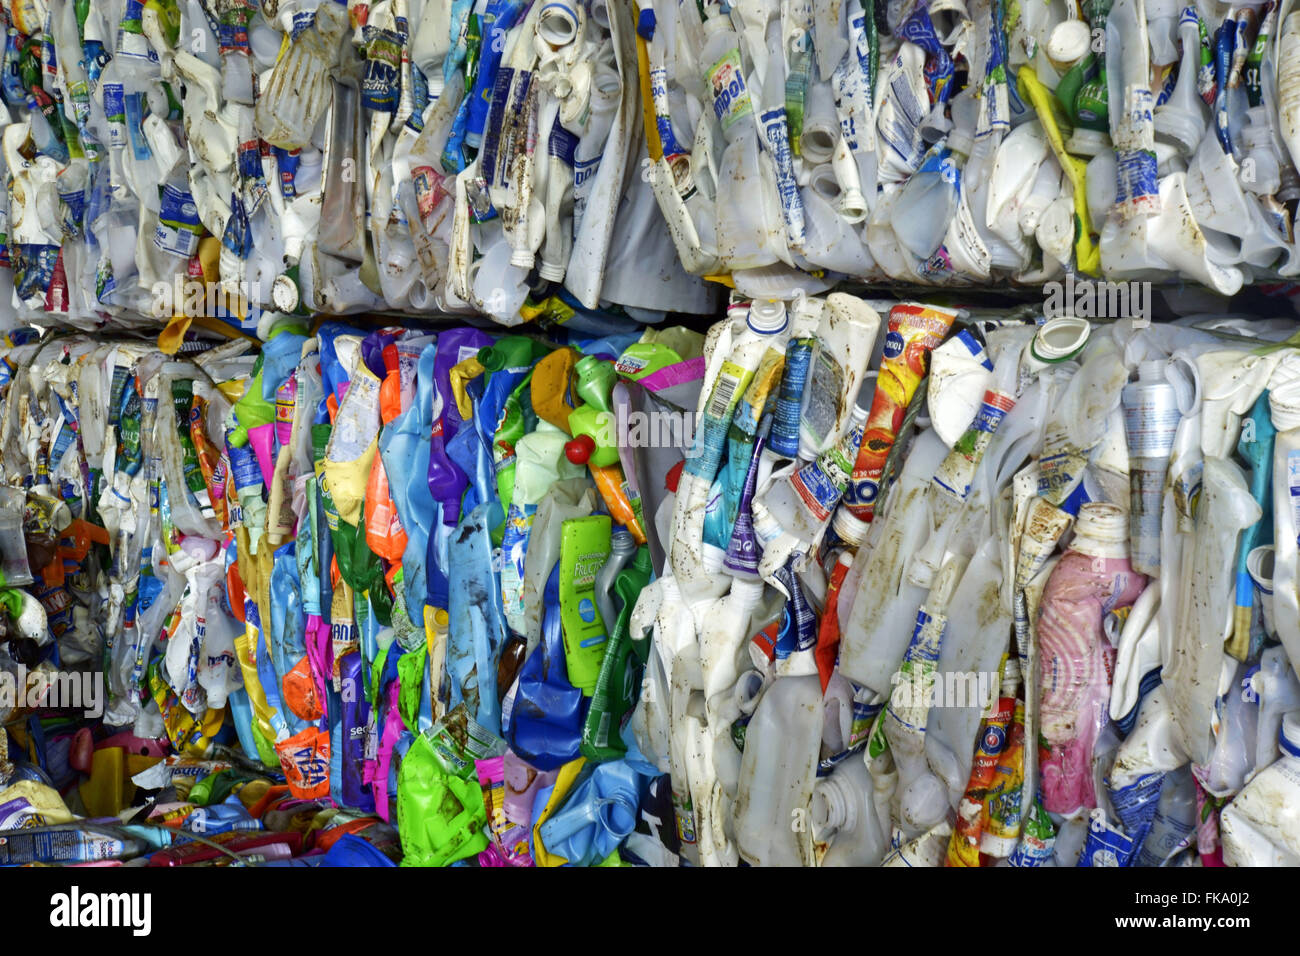 Détail de balles d'emballages plastiques de la collecte et le tri des matériaux recyclables program Banque D'Images